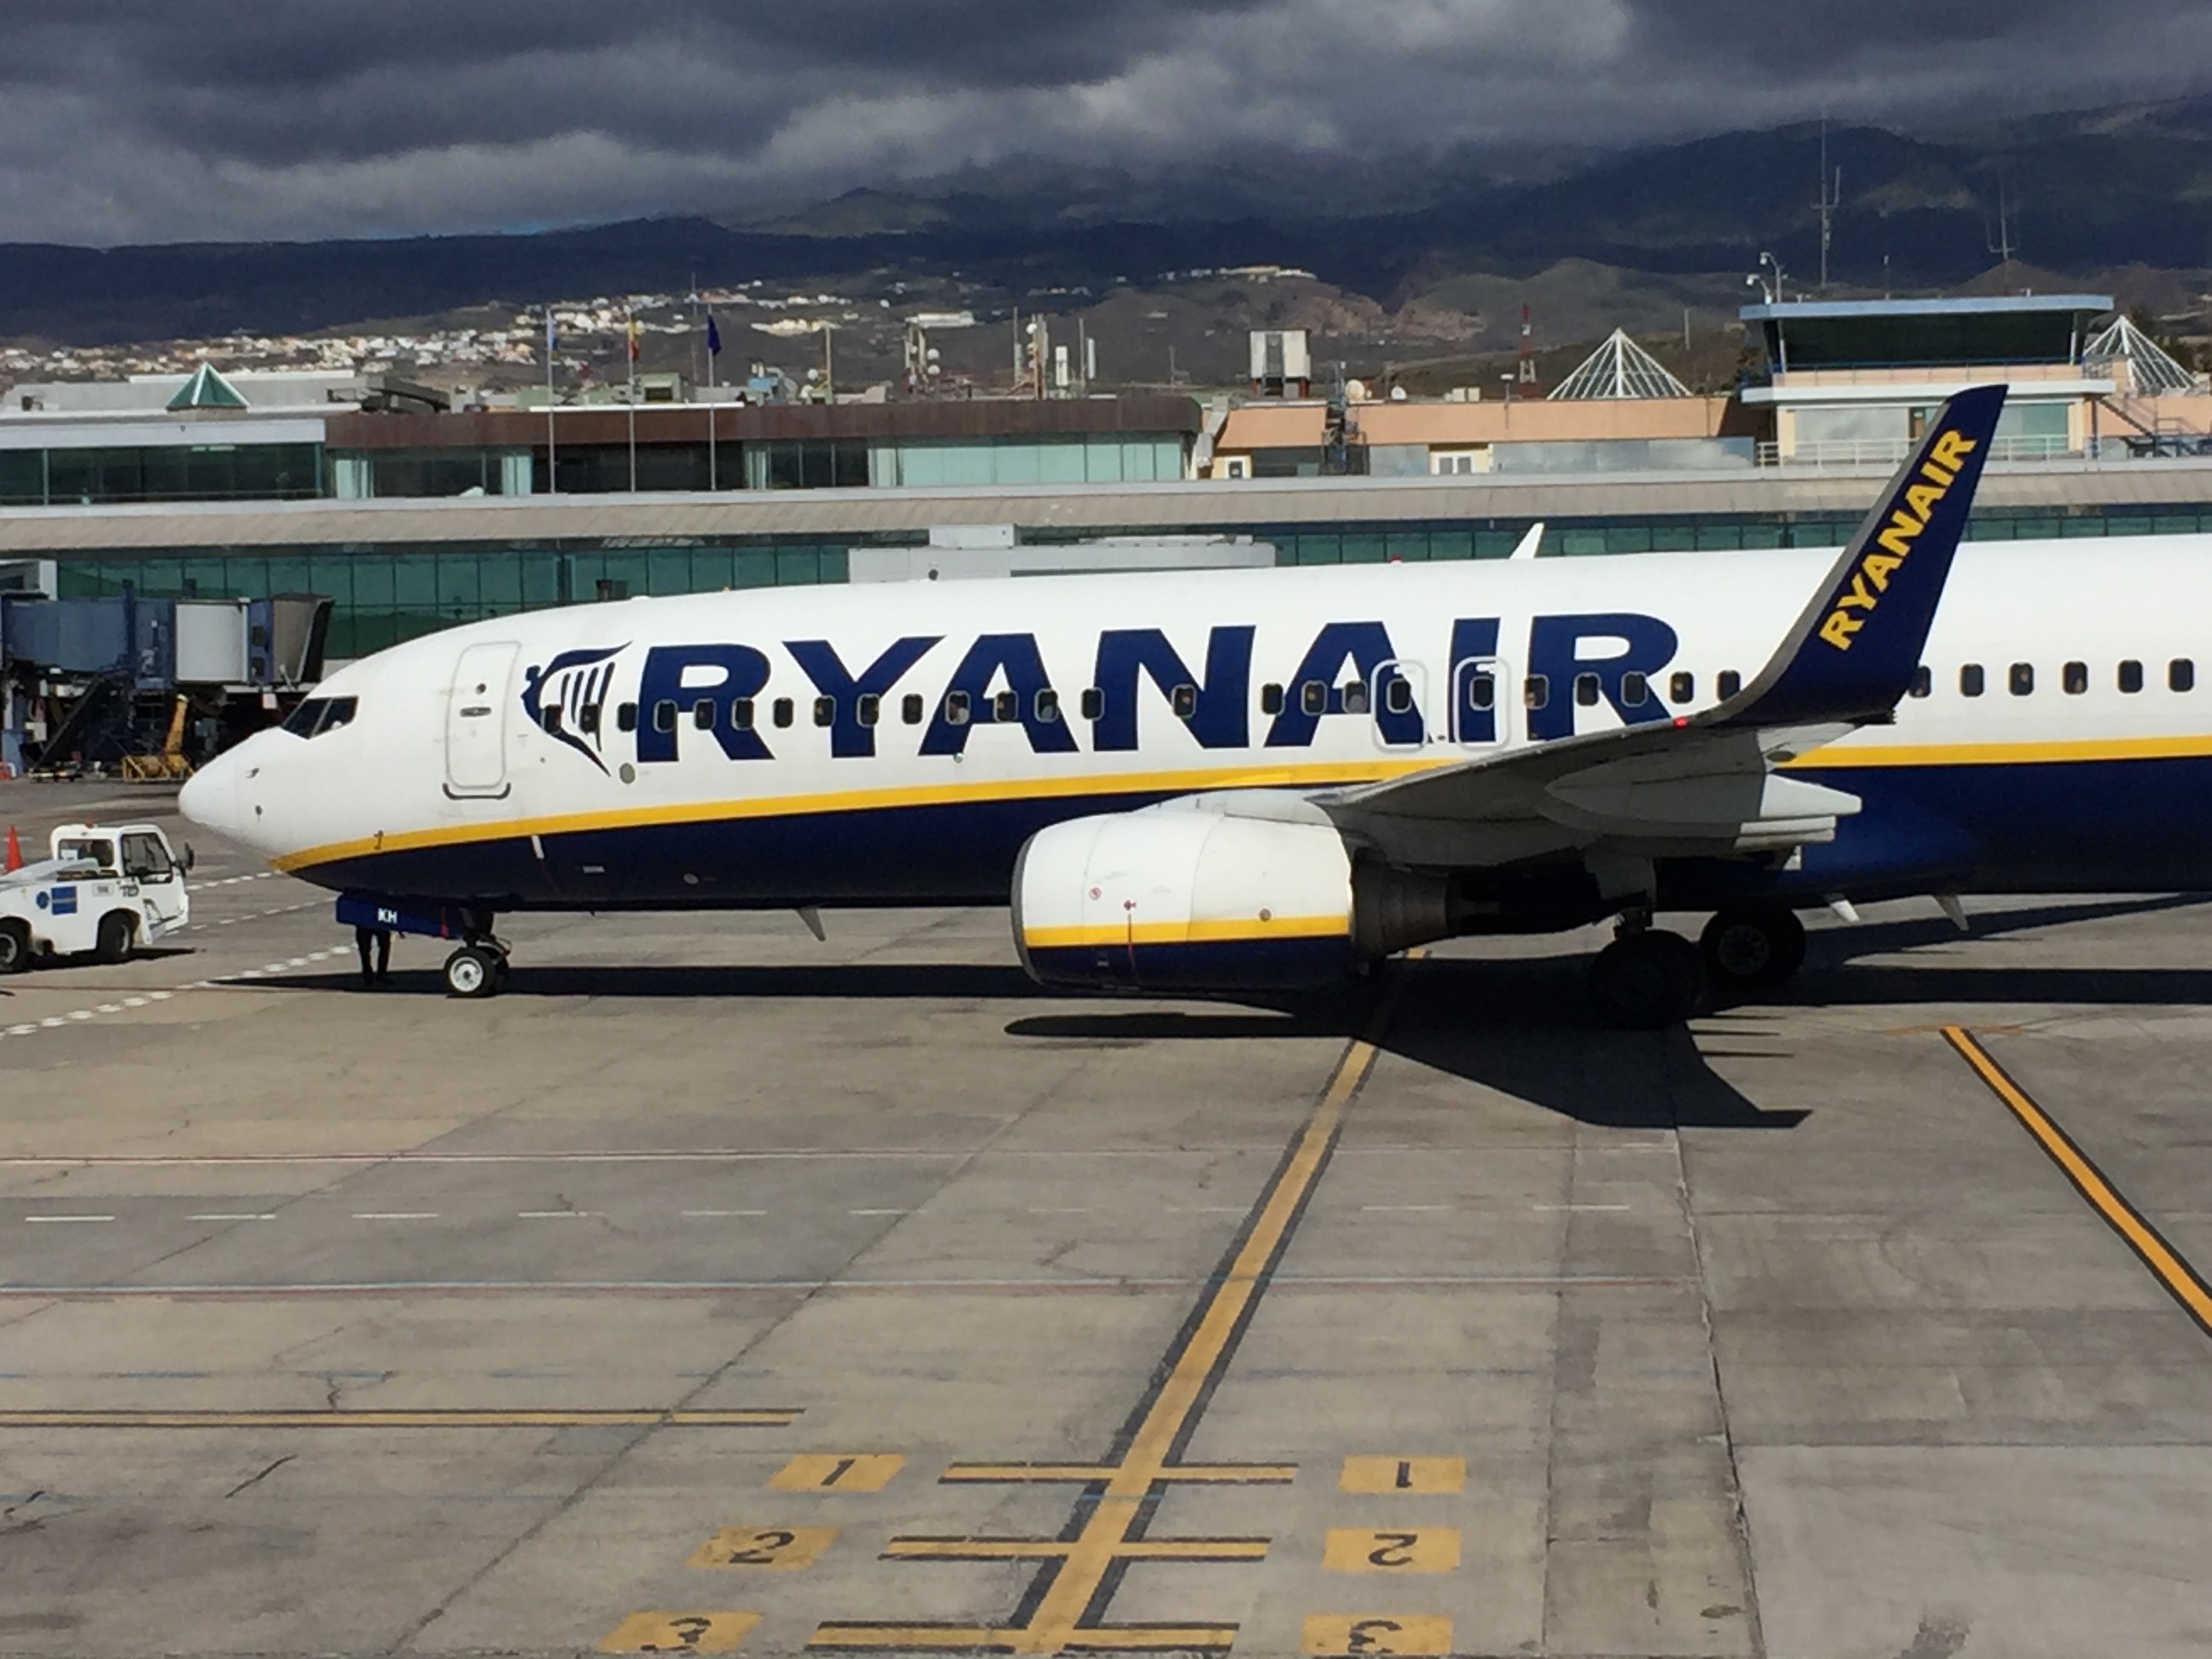 Î‘Ï€Î¿Ï„Î­Î»ÎµÏƒÎ¼Î± ÎµÎ¹ÎºÏŒÎ½Î±Ï‚ Î³Î¹Î± Ryanair results are far from disastrous, says GlobalDatas